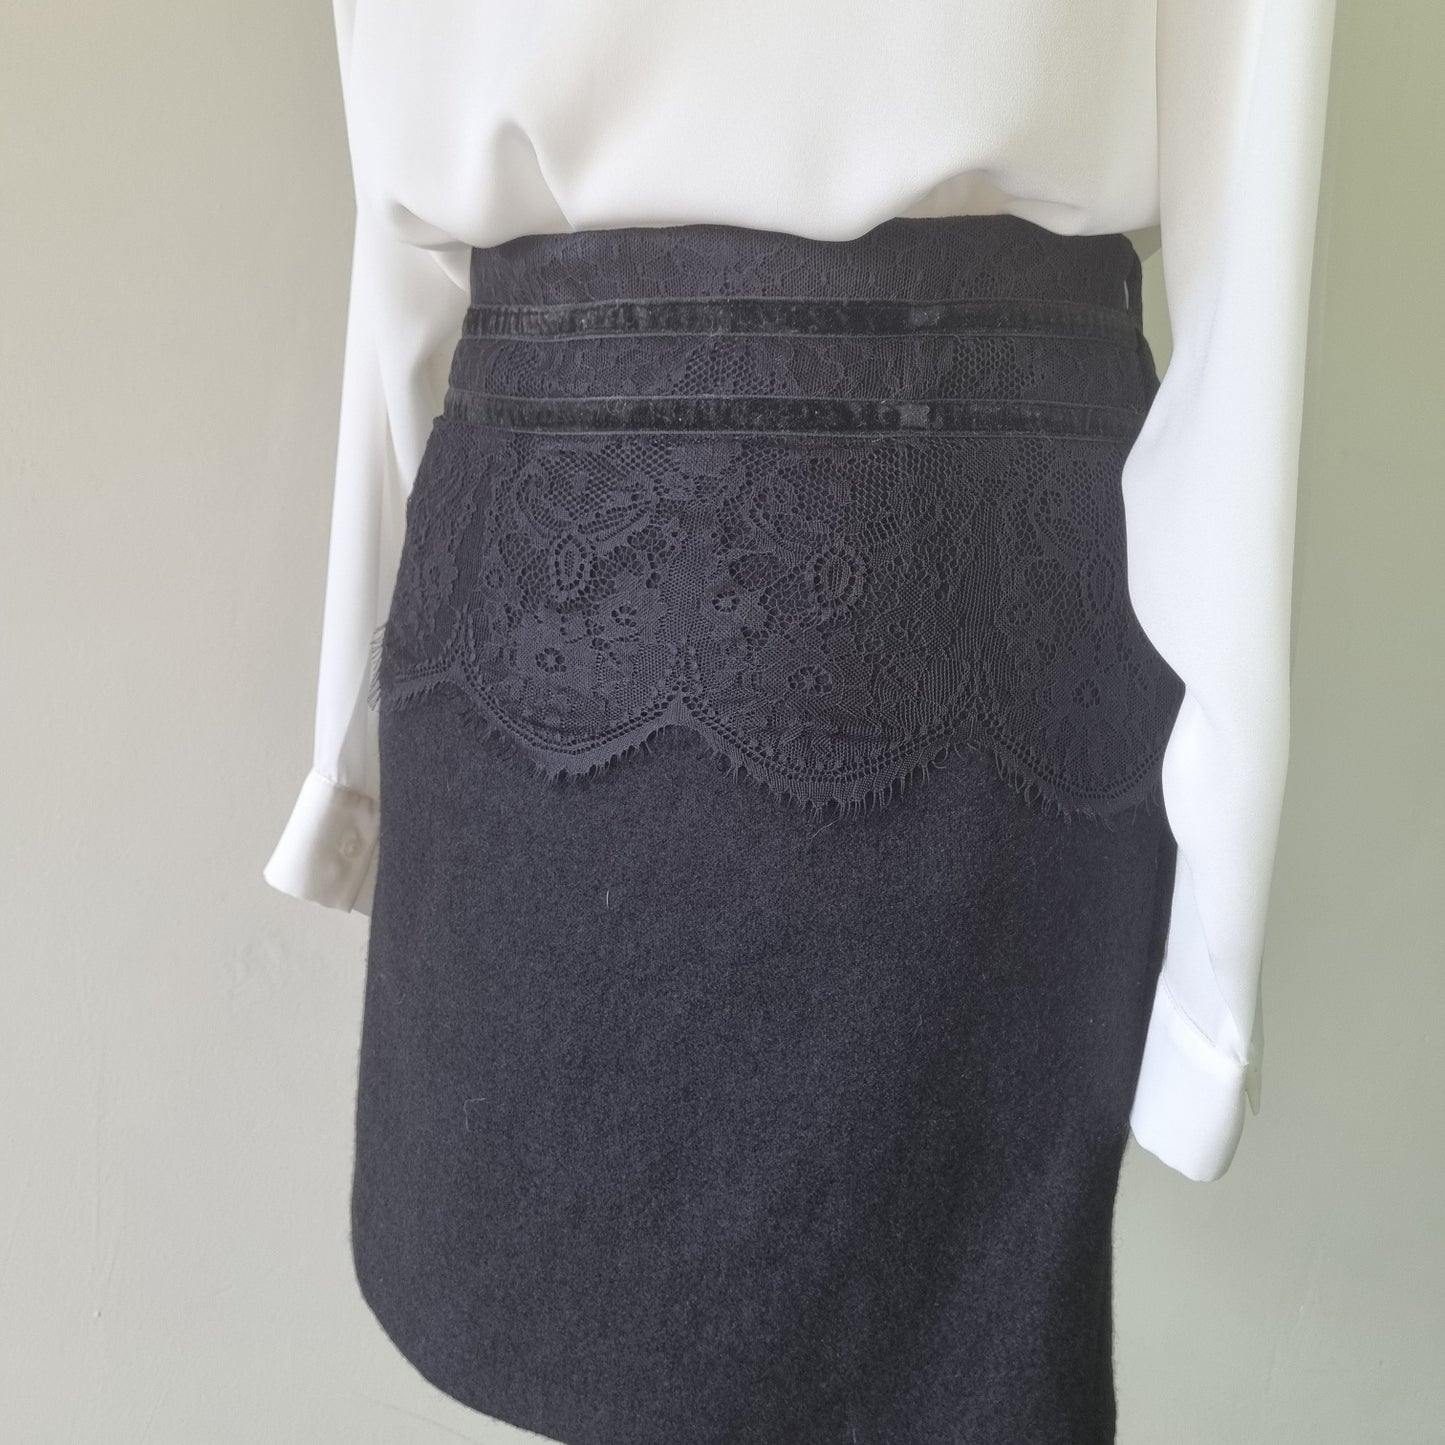 Jo Borkett - Black lined mini skirt with velvet bow trimmings